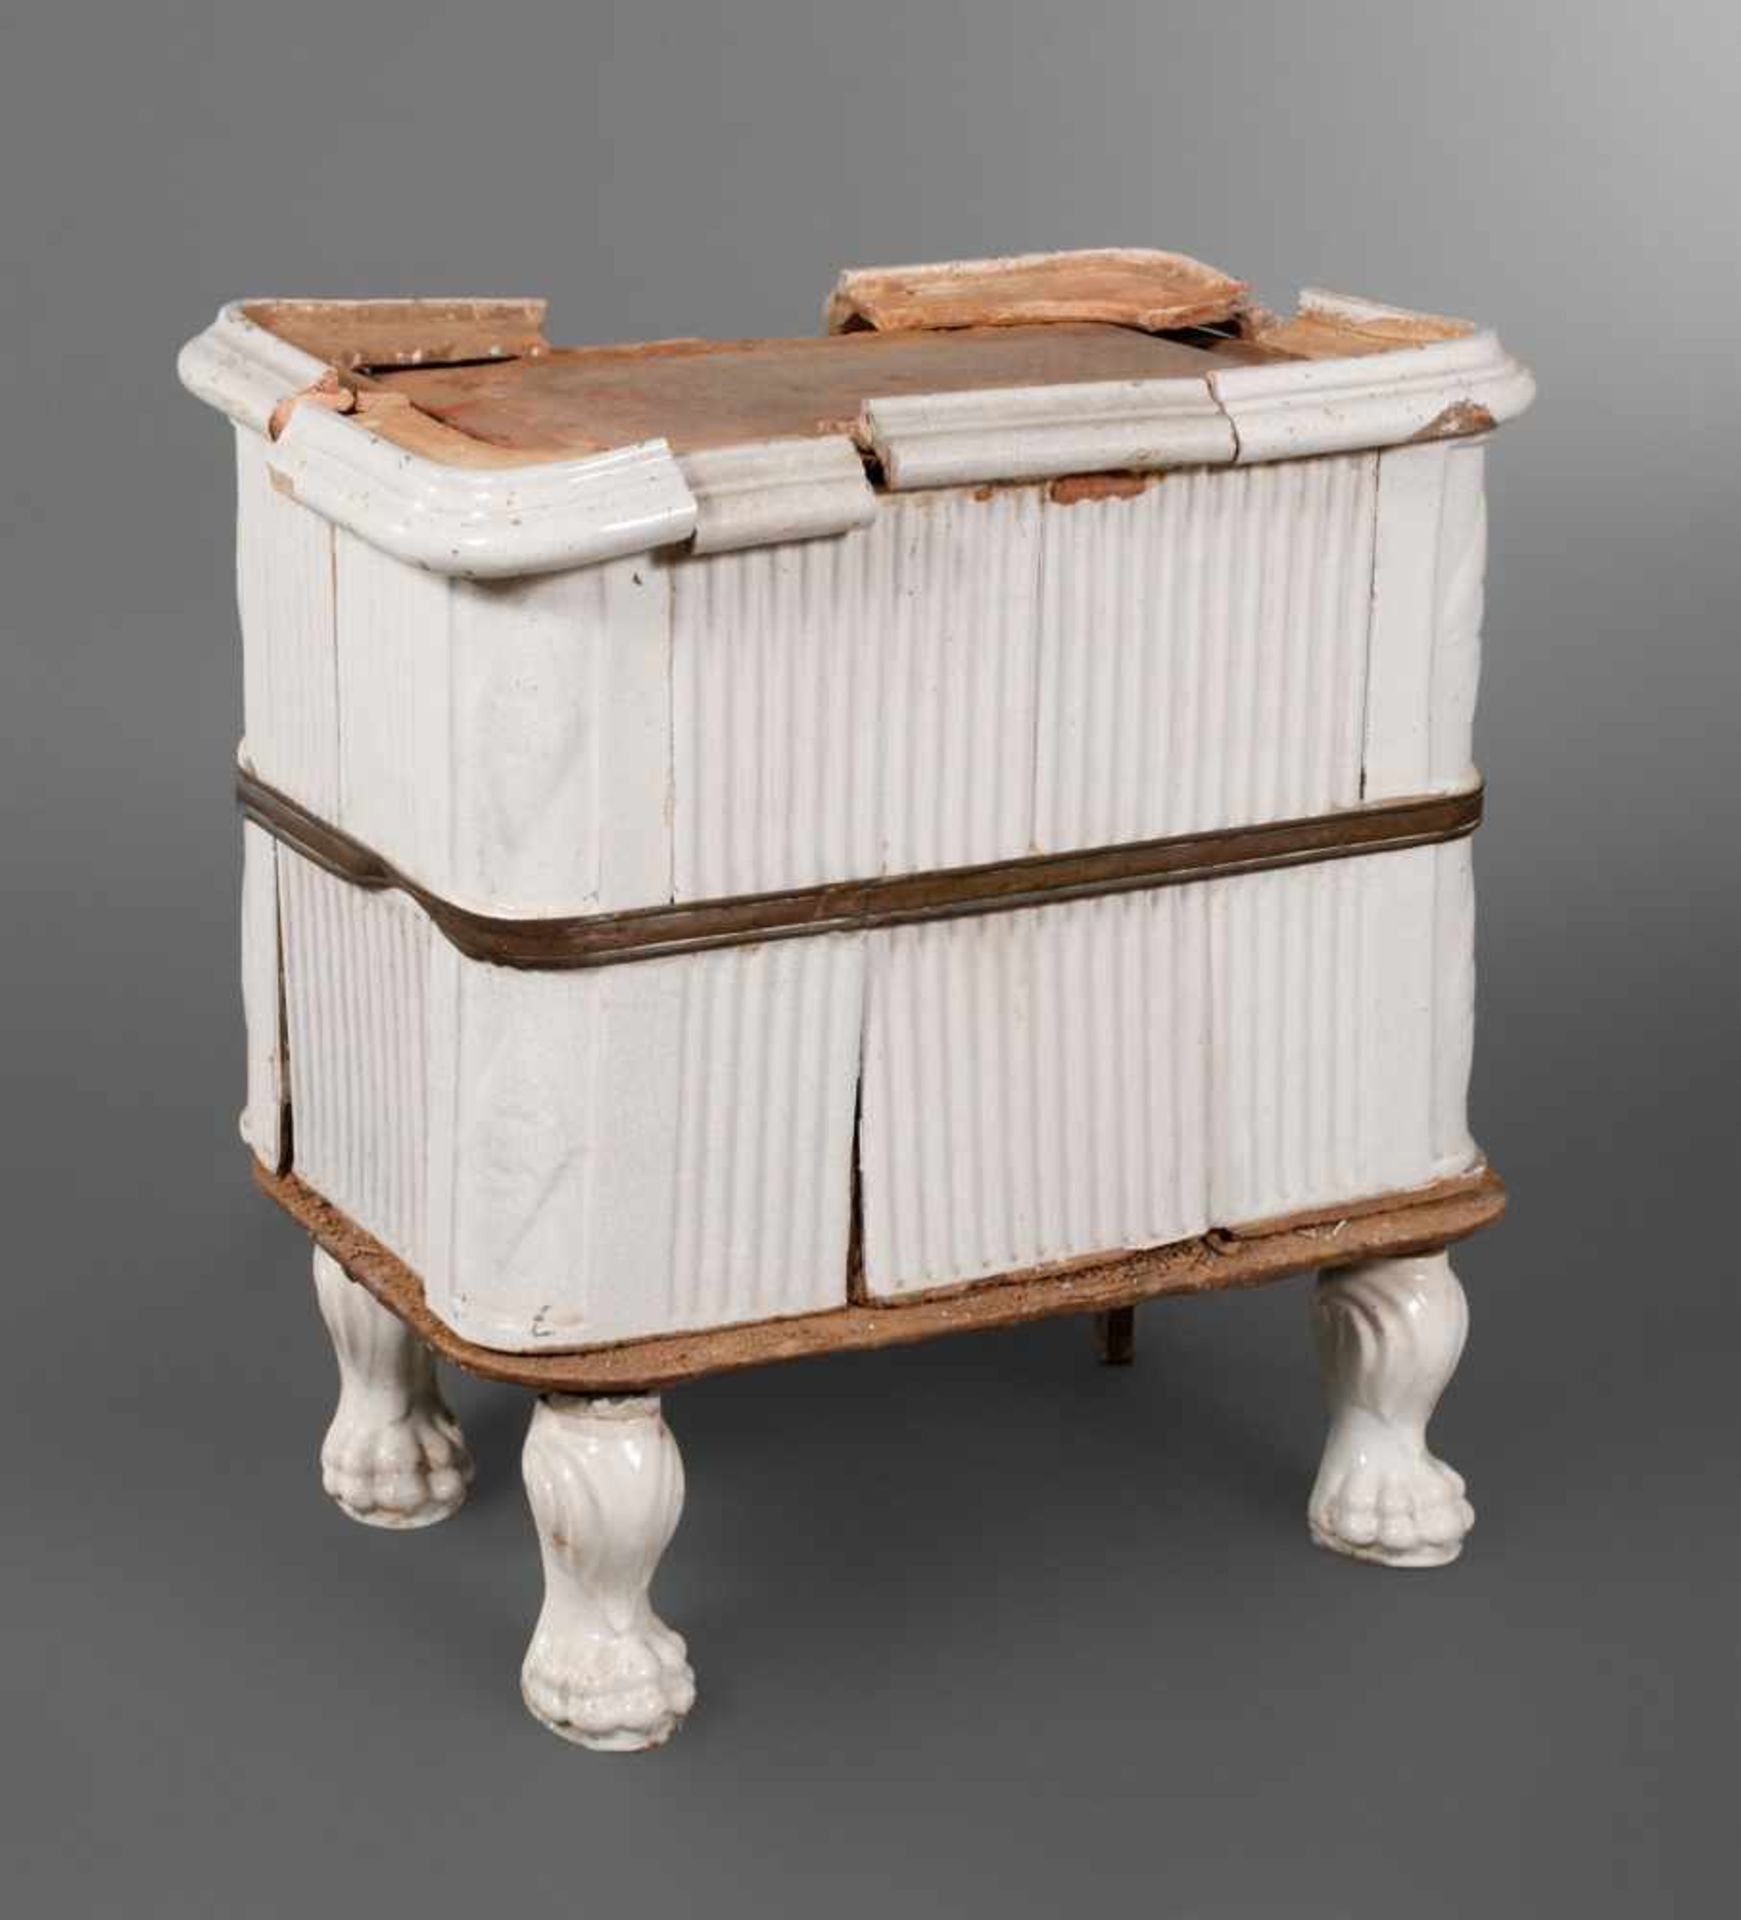 Kleiner klassizistischer Ofensockel um 1800, Keramik weiß glasiert, Löwentatzenfüße, zwei Etagen,